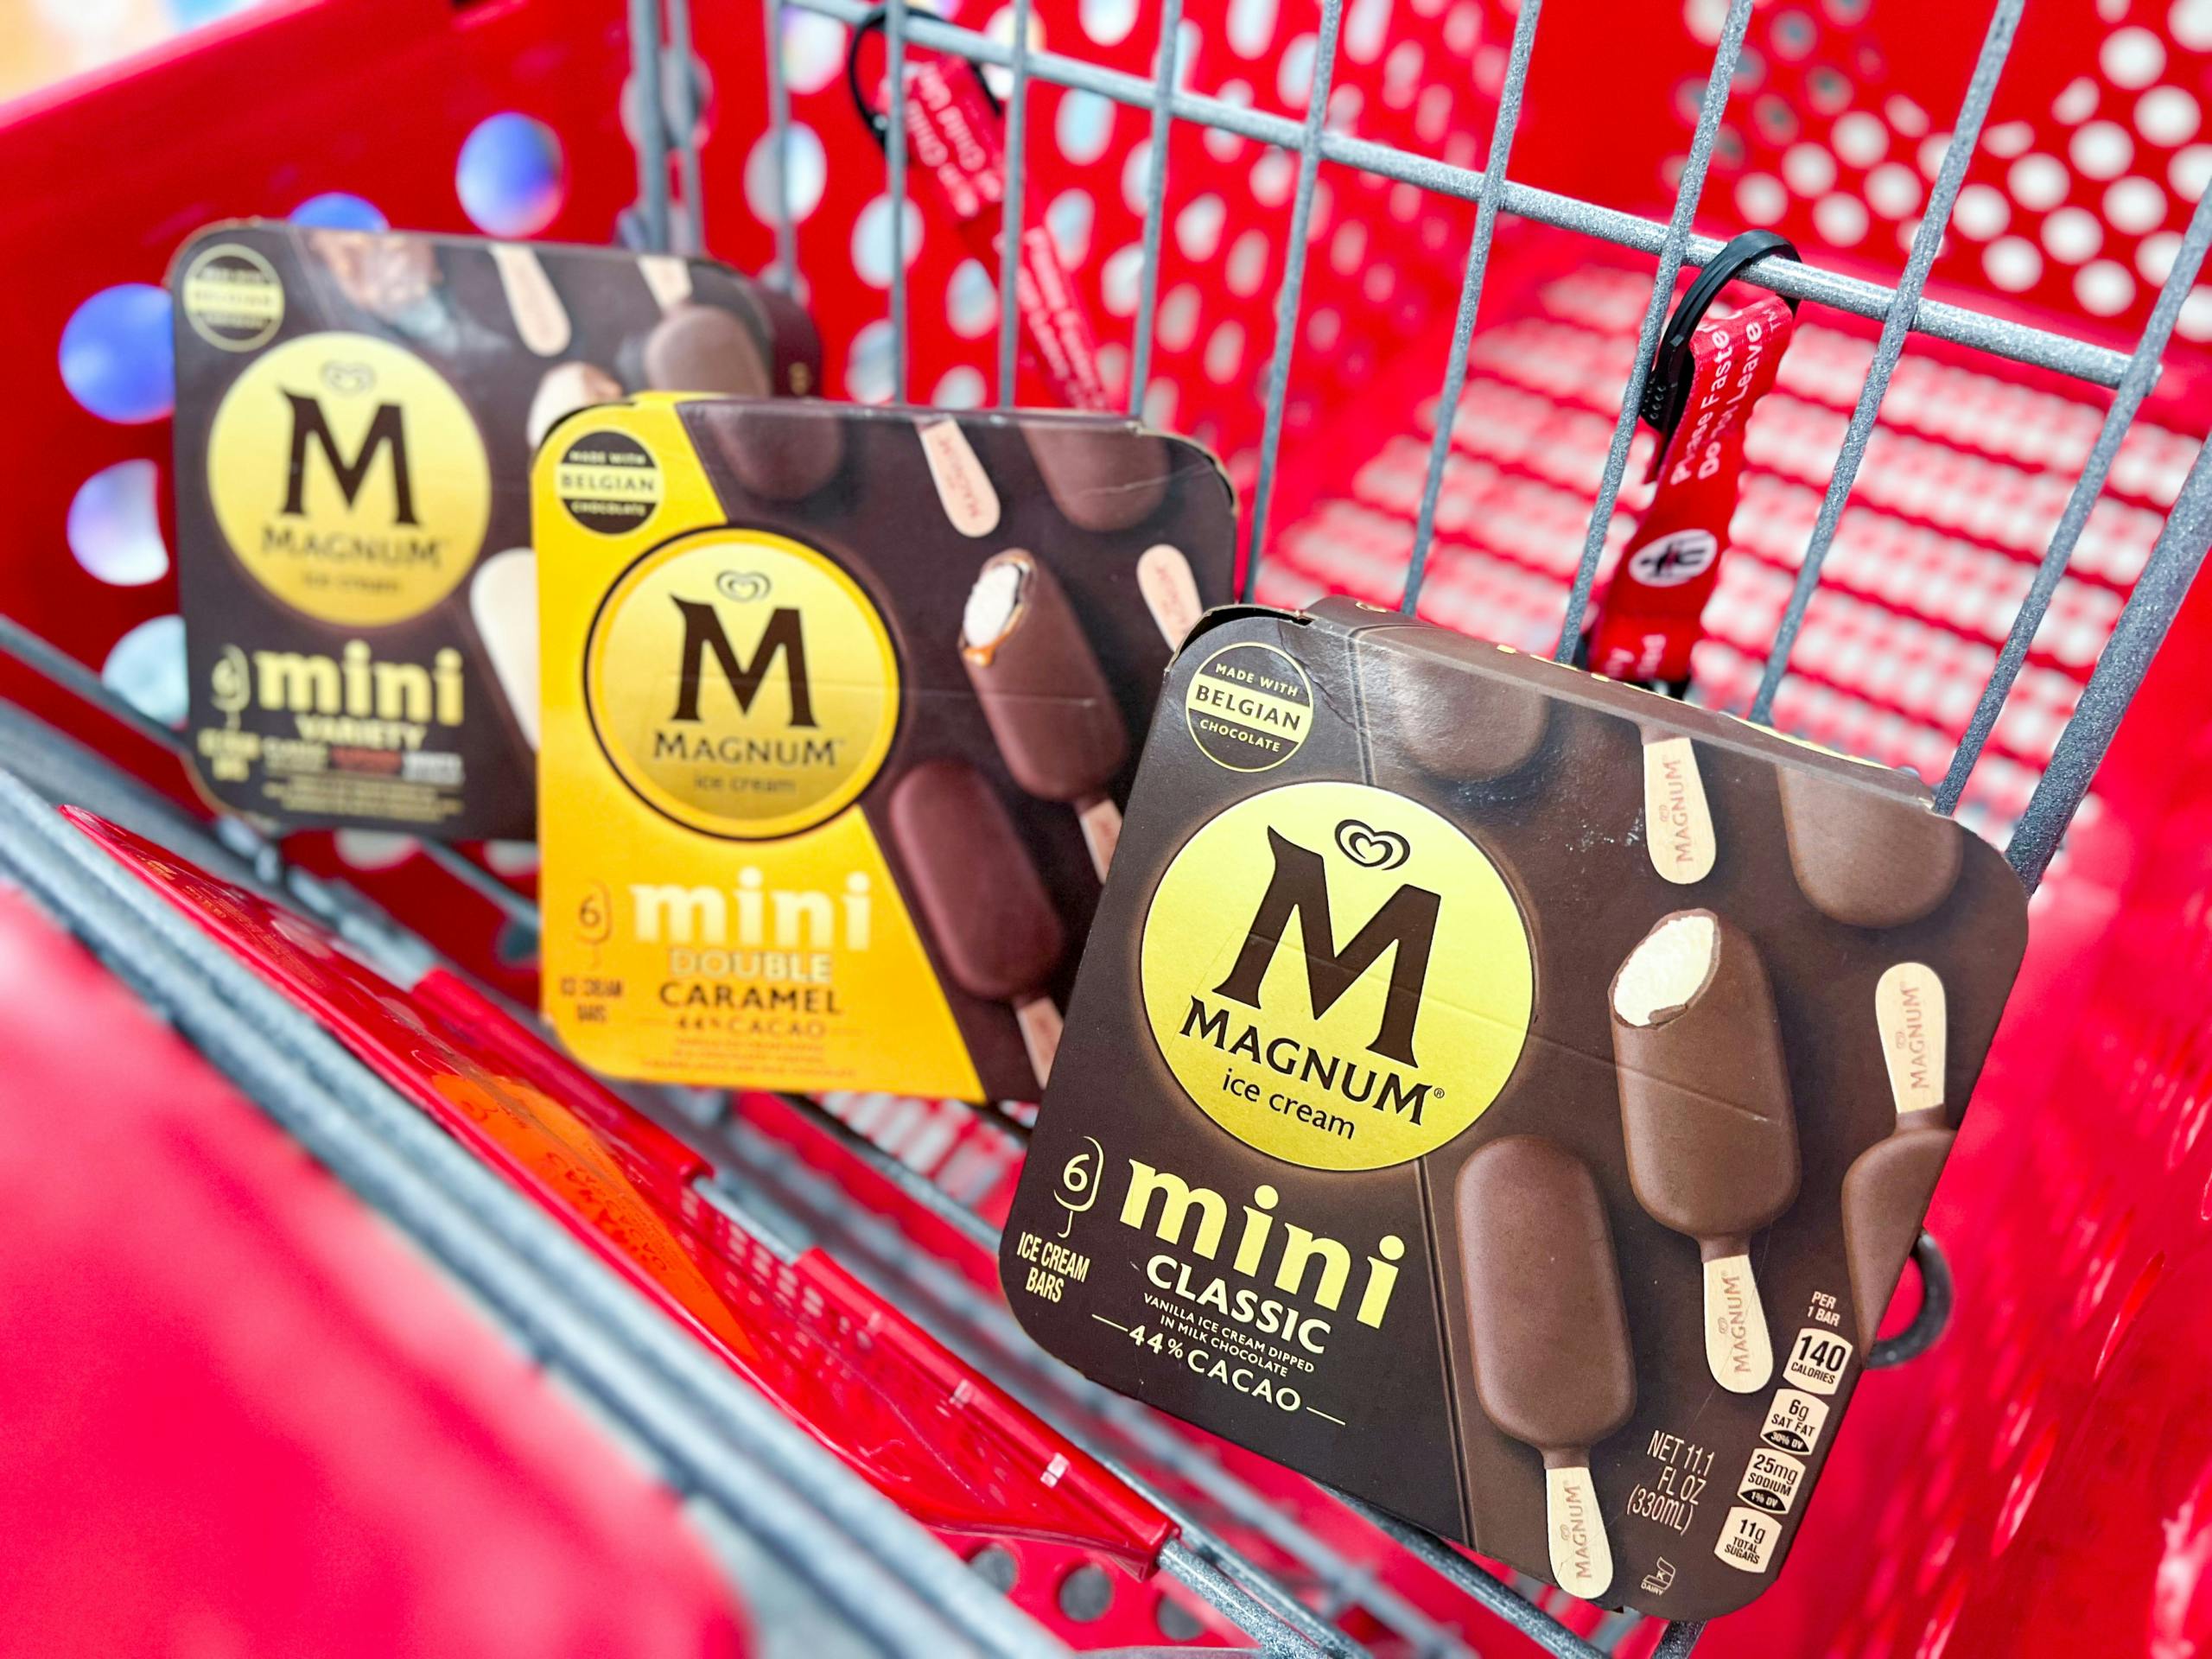 Three mini Magnum ice cream tins in the cart